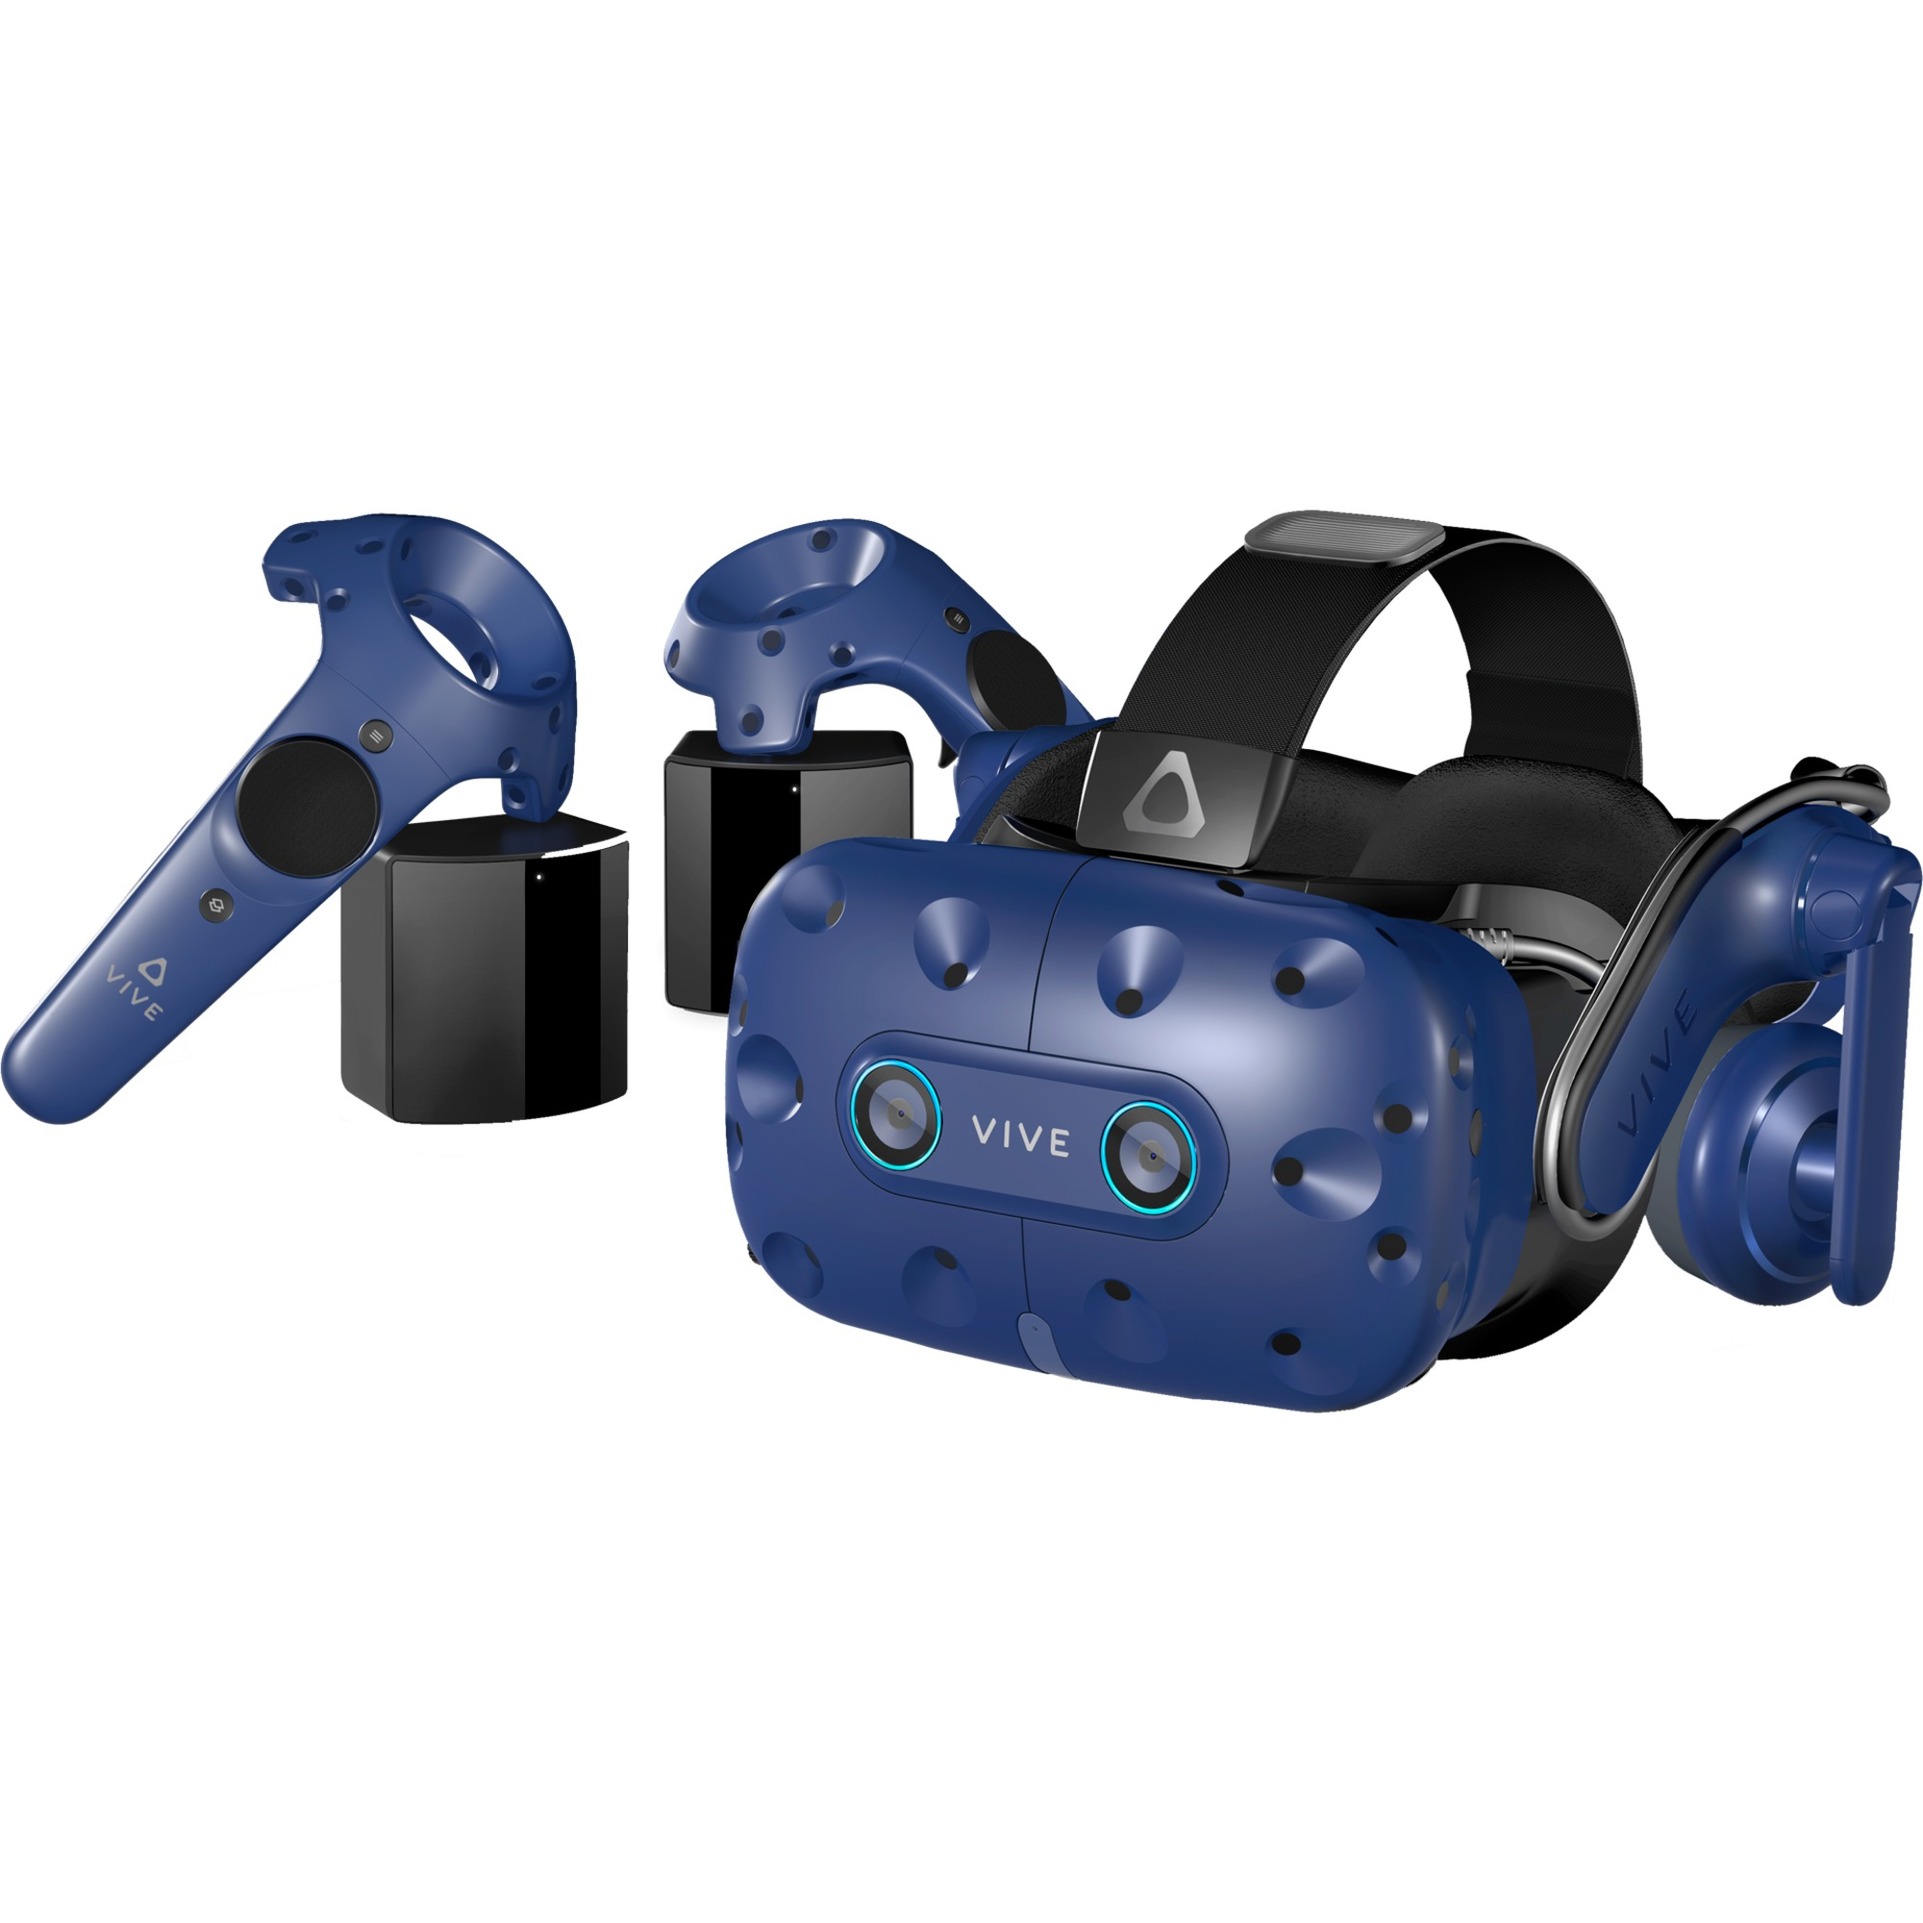 Image of Alternate - Vive Pro Eye, VR-Brille online einkaufen bei Alternate